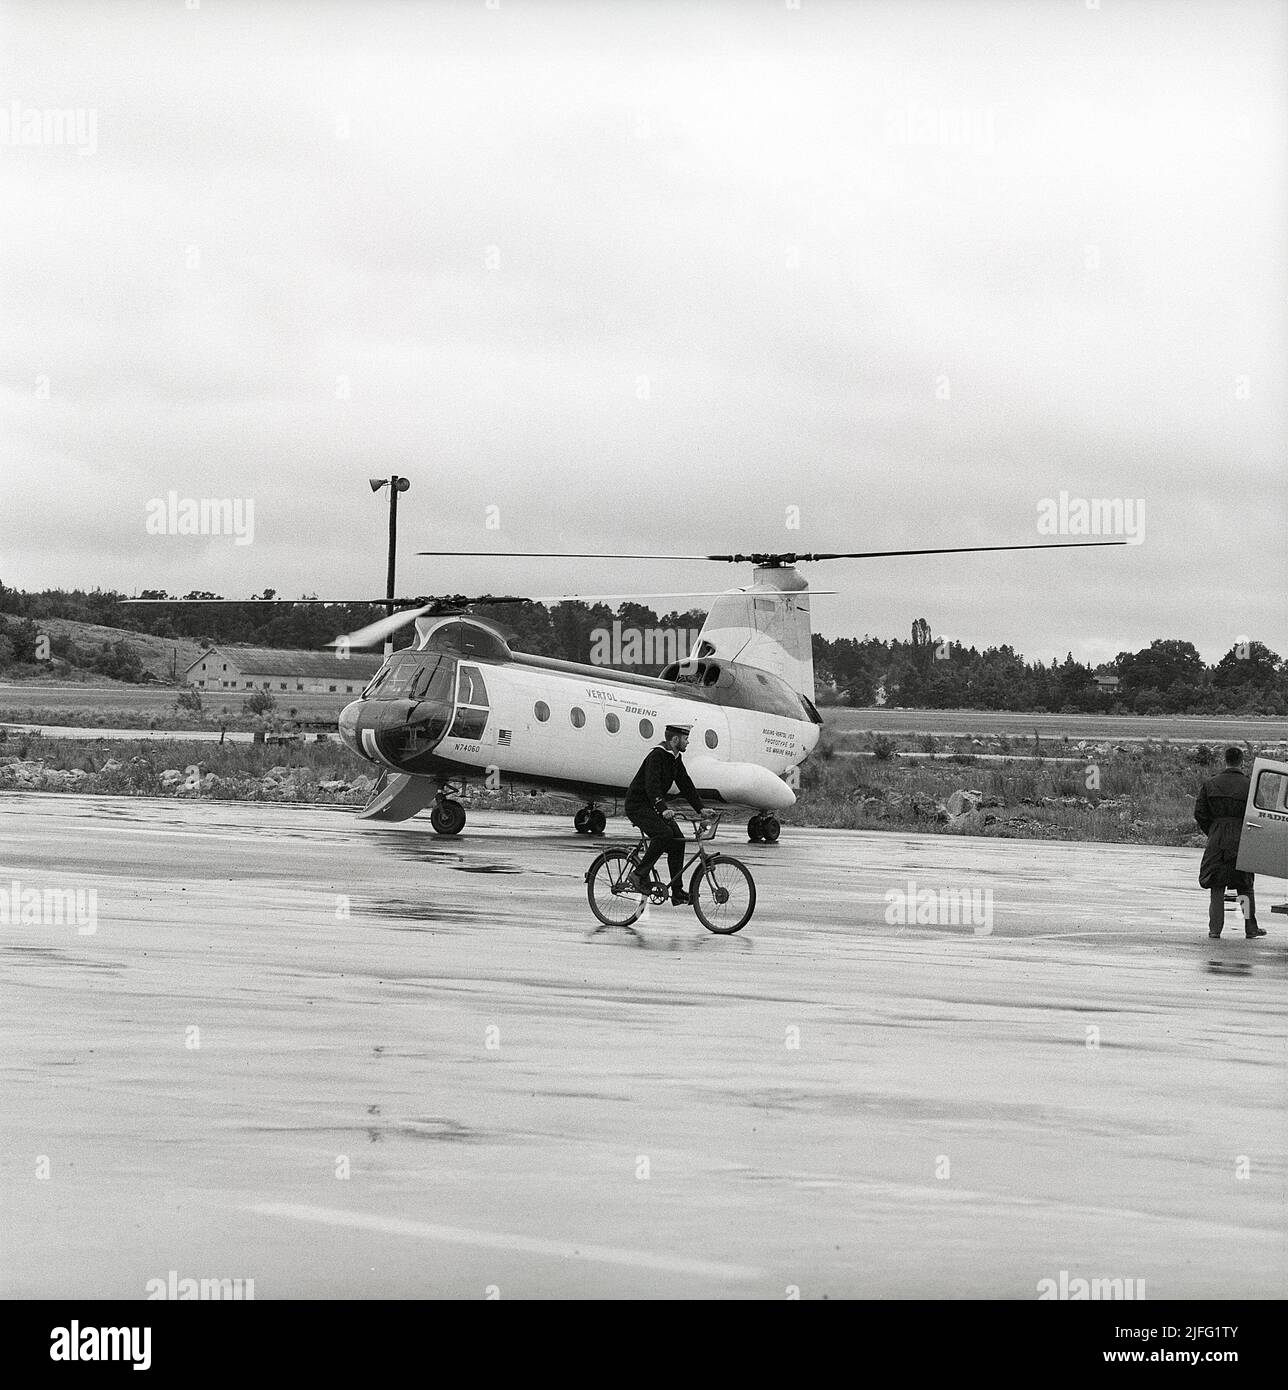 Geschichte des Hubschraubers. Die Boeing Vertol 107, auch HKP 4 genannt. Hubschrauber von der amerikanischen Firma Vertol entwickelt, die mit Boeing fusioniert wurde, die Produktion begann 1956. Die US-Streitkräfte begannen, es unter dem Namen CH-46 Sea Knight zu verwenden. Das schwedische Militär erwarb 22 Einheiten des Hubschraubers mit der ersten Lieferung 1963, wenn das Bild aufgenommen wird. Sie wurden hauptsächlich für die U-Boot-Suche und -Jagd verwendet. Schweden 1963. ref Kristoffersson CU26-1 CU26,27,28 Stockfoto